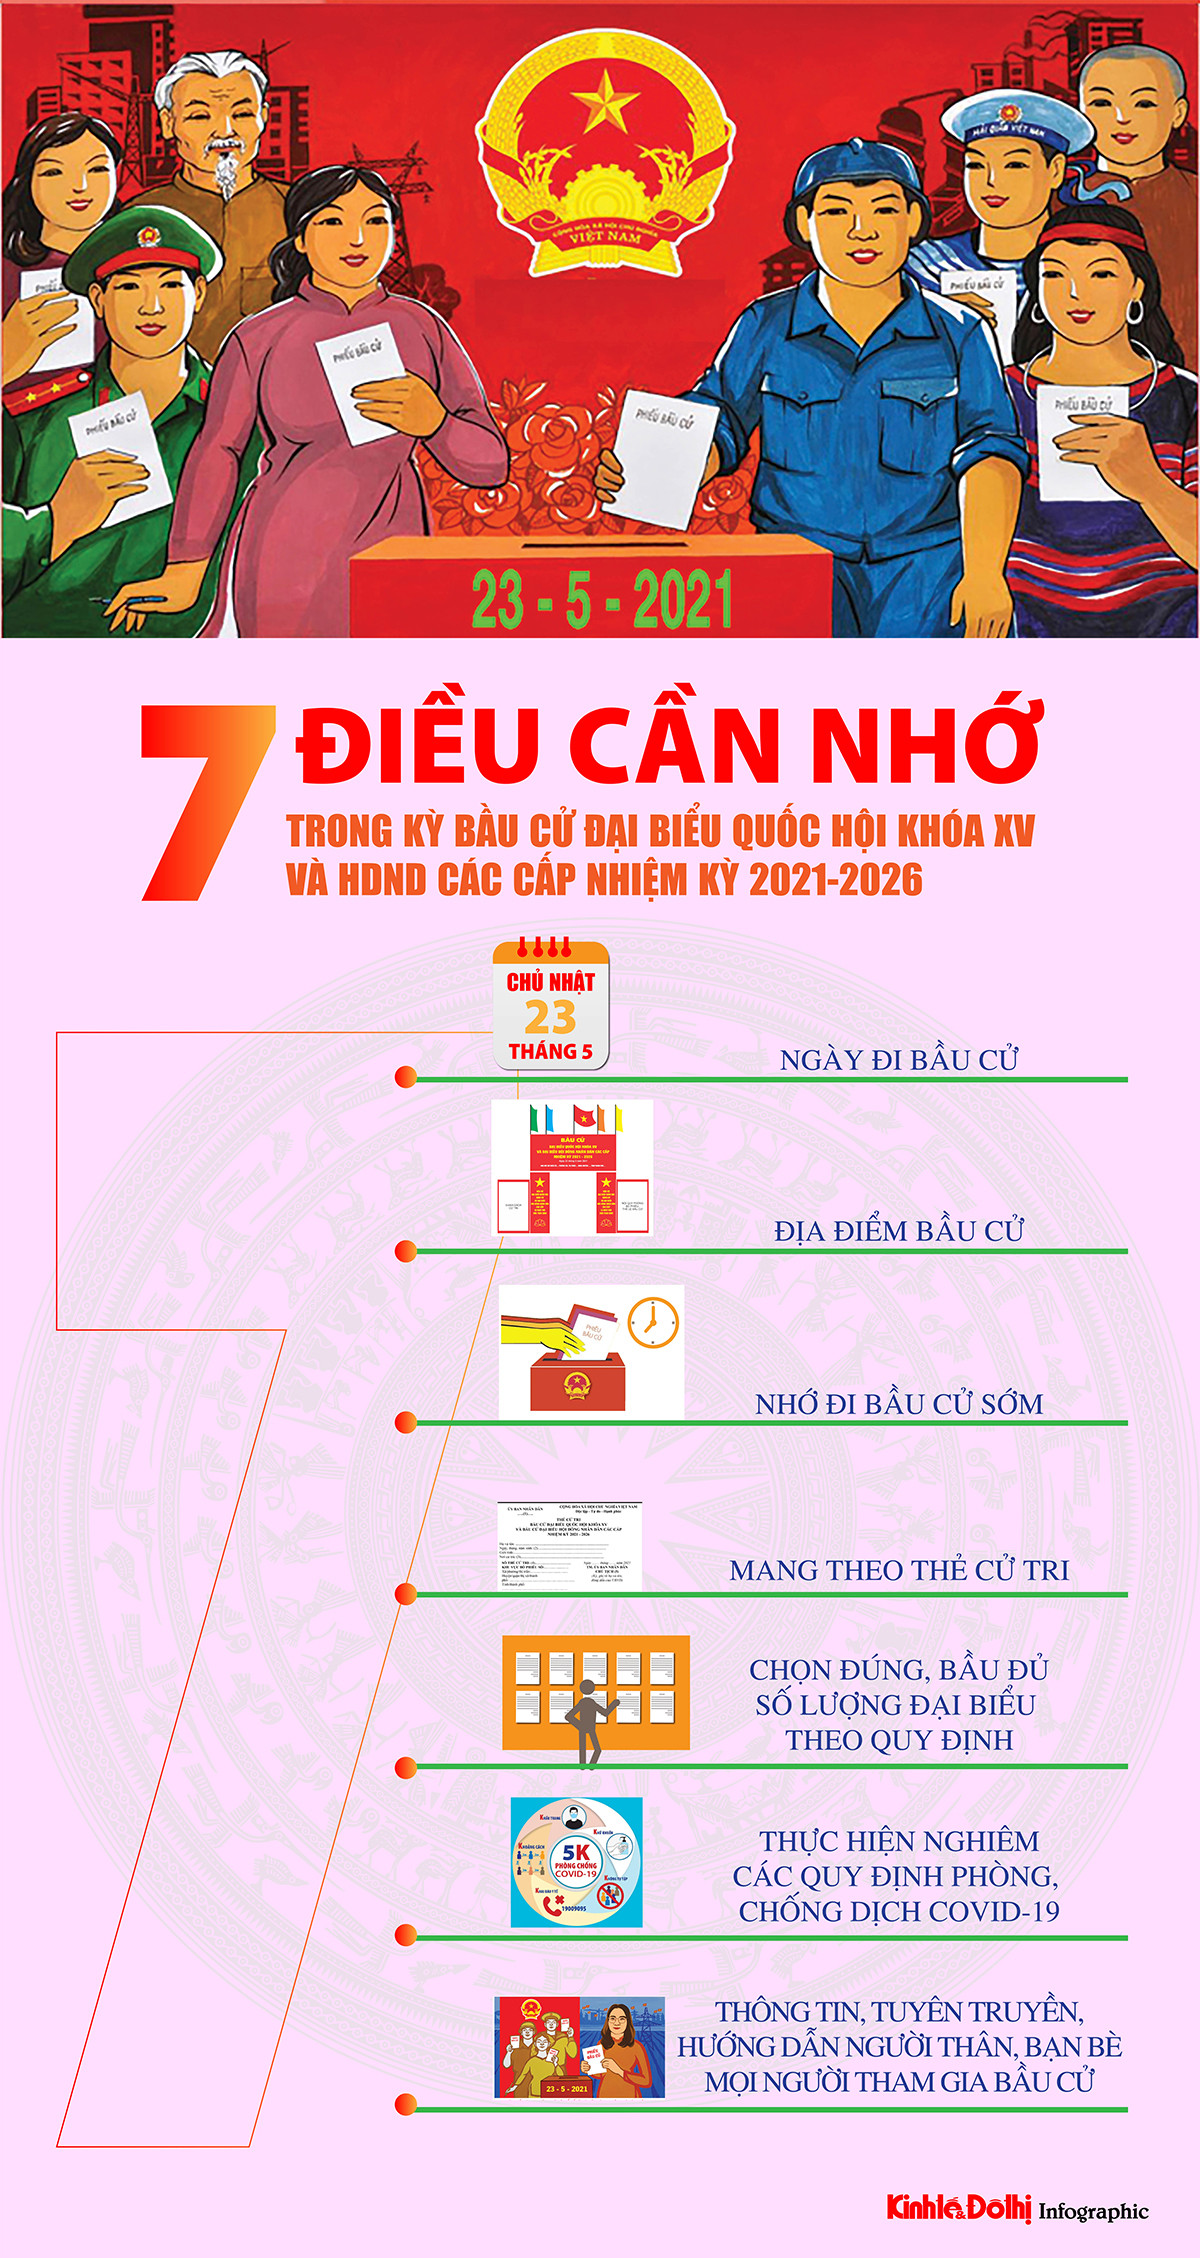 (Infographic) 7 điều cần nhớ trong kỳ bầu cử đại biểu Quốc hội khóa XV và đại biểu HĐND các cấp nhiệm kỳ 2021-2026